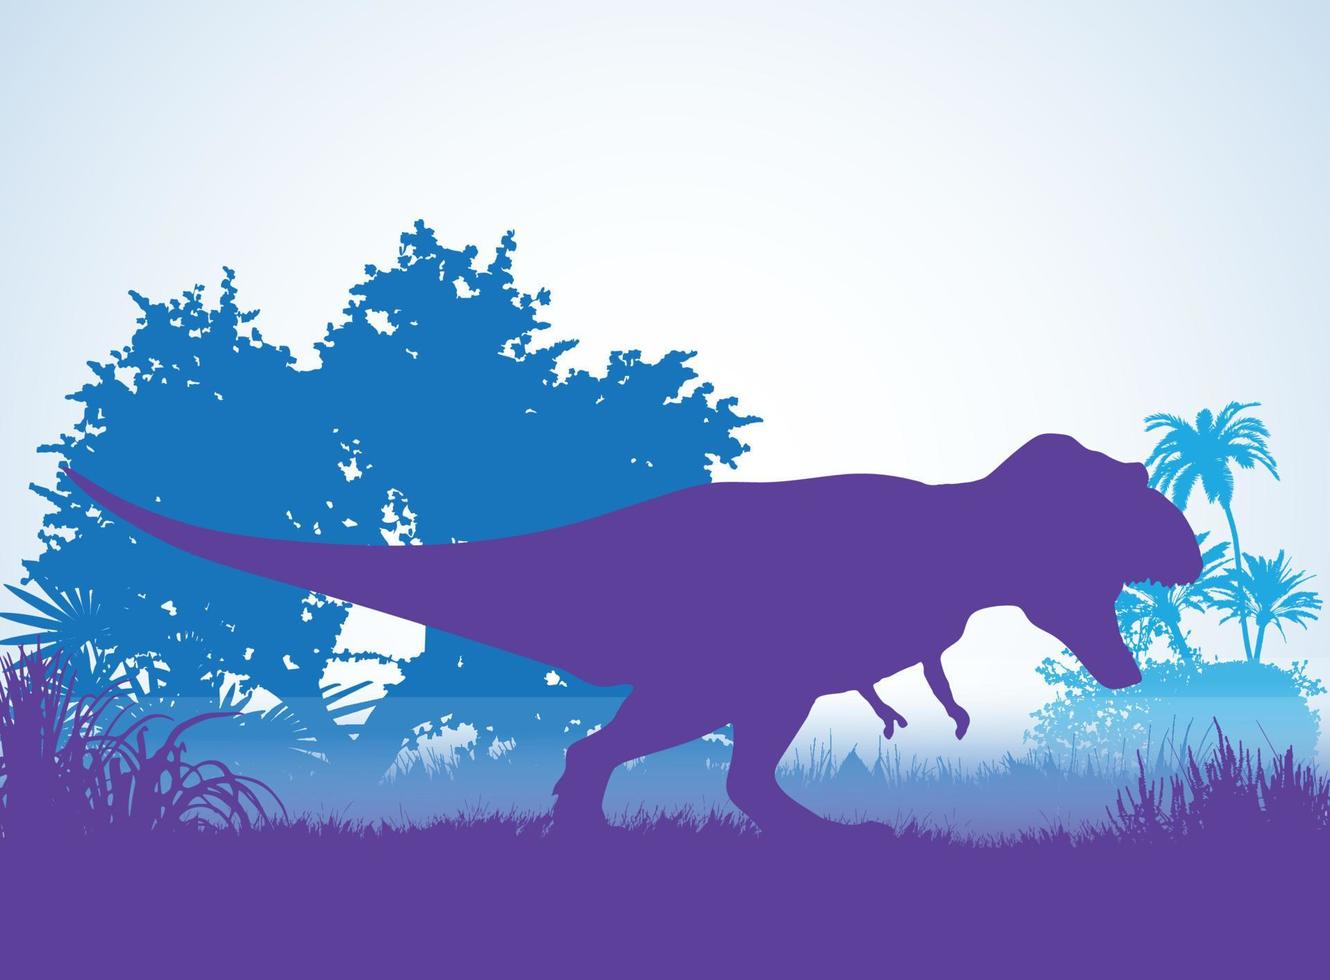 tirannosauro t-rex, sagome di dinosauri in ambiente preistorico strati sovrapposti sfondo decorativo banner illustrazione vettoriale astratta